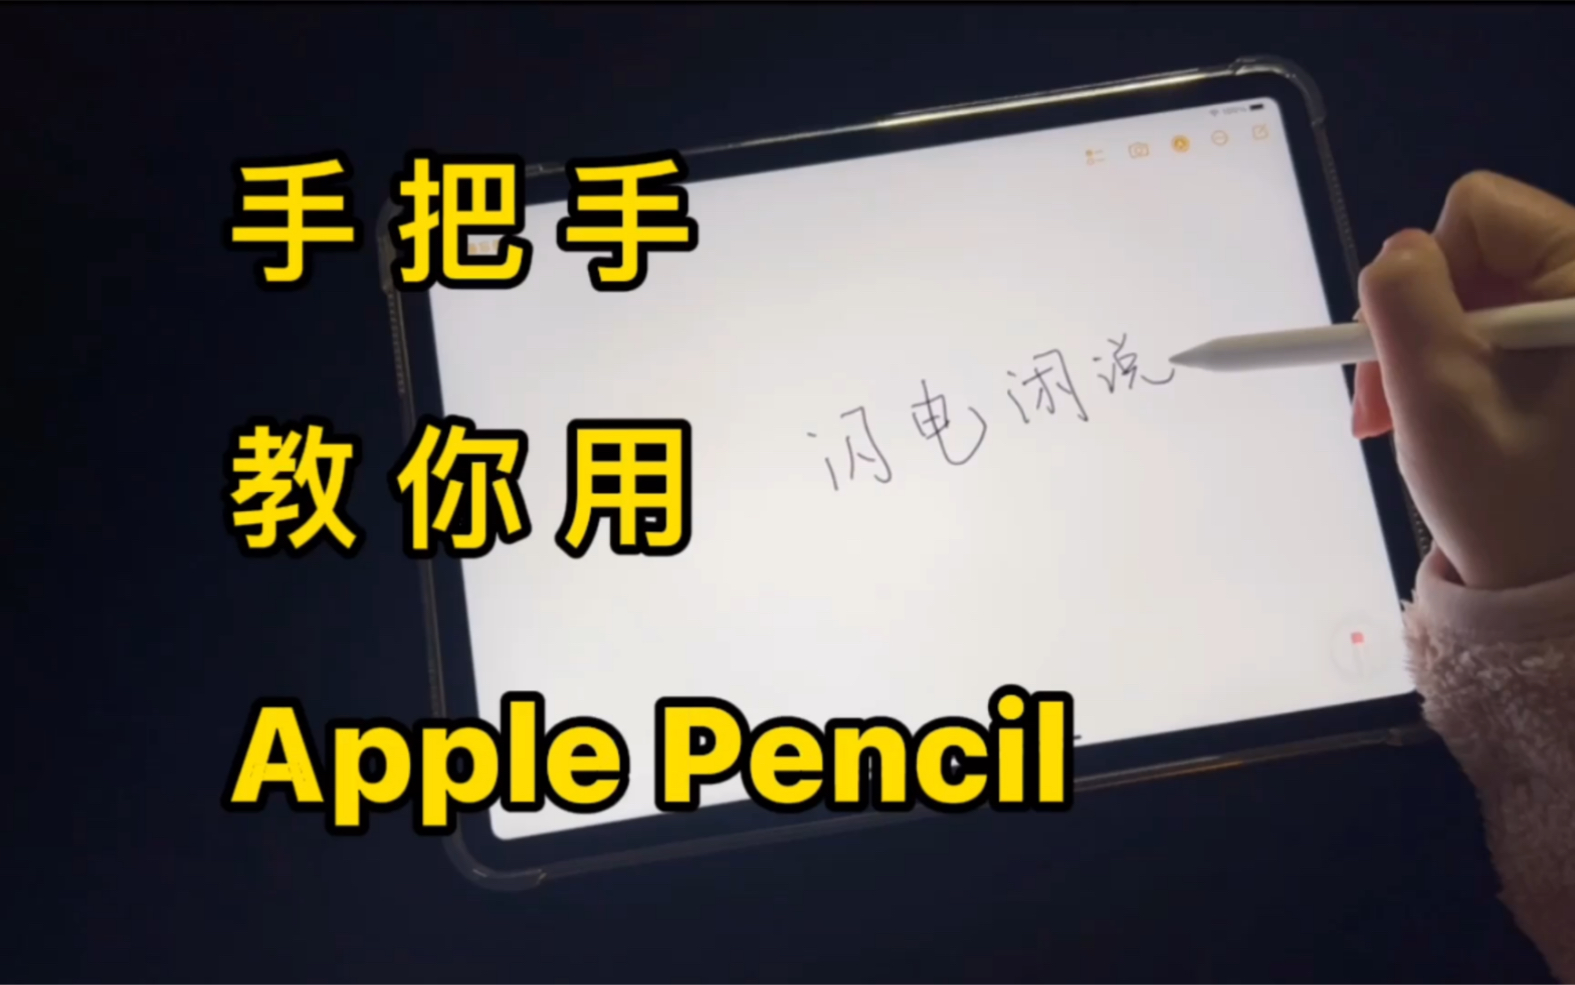 你既然买了 Apple Pencil，那你必须会用才行！使用指南奉上！